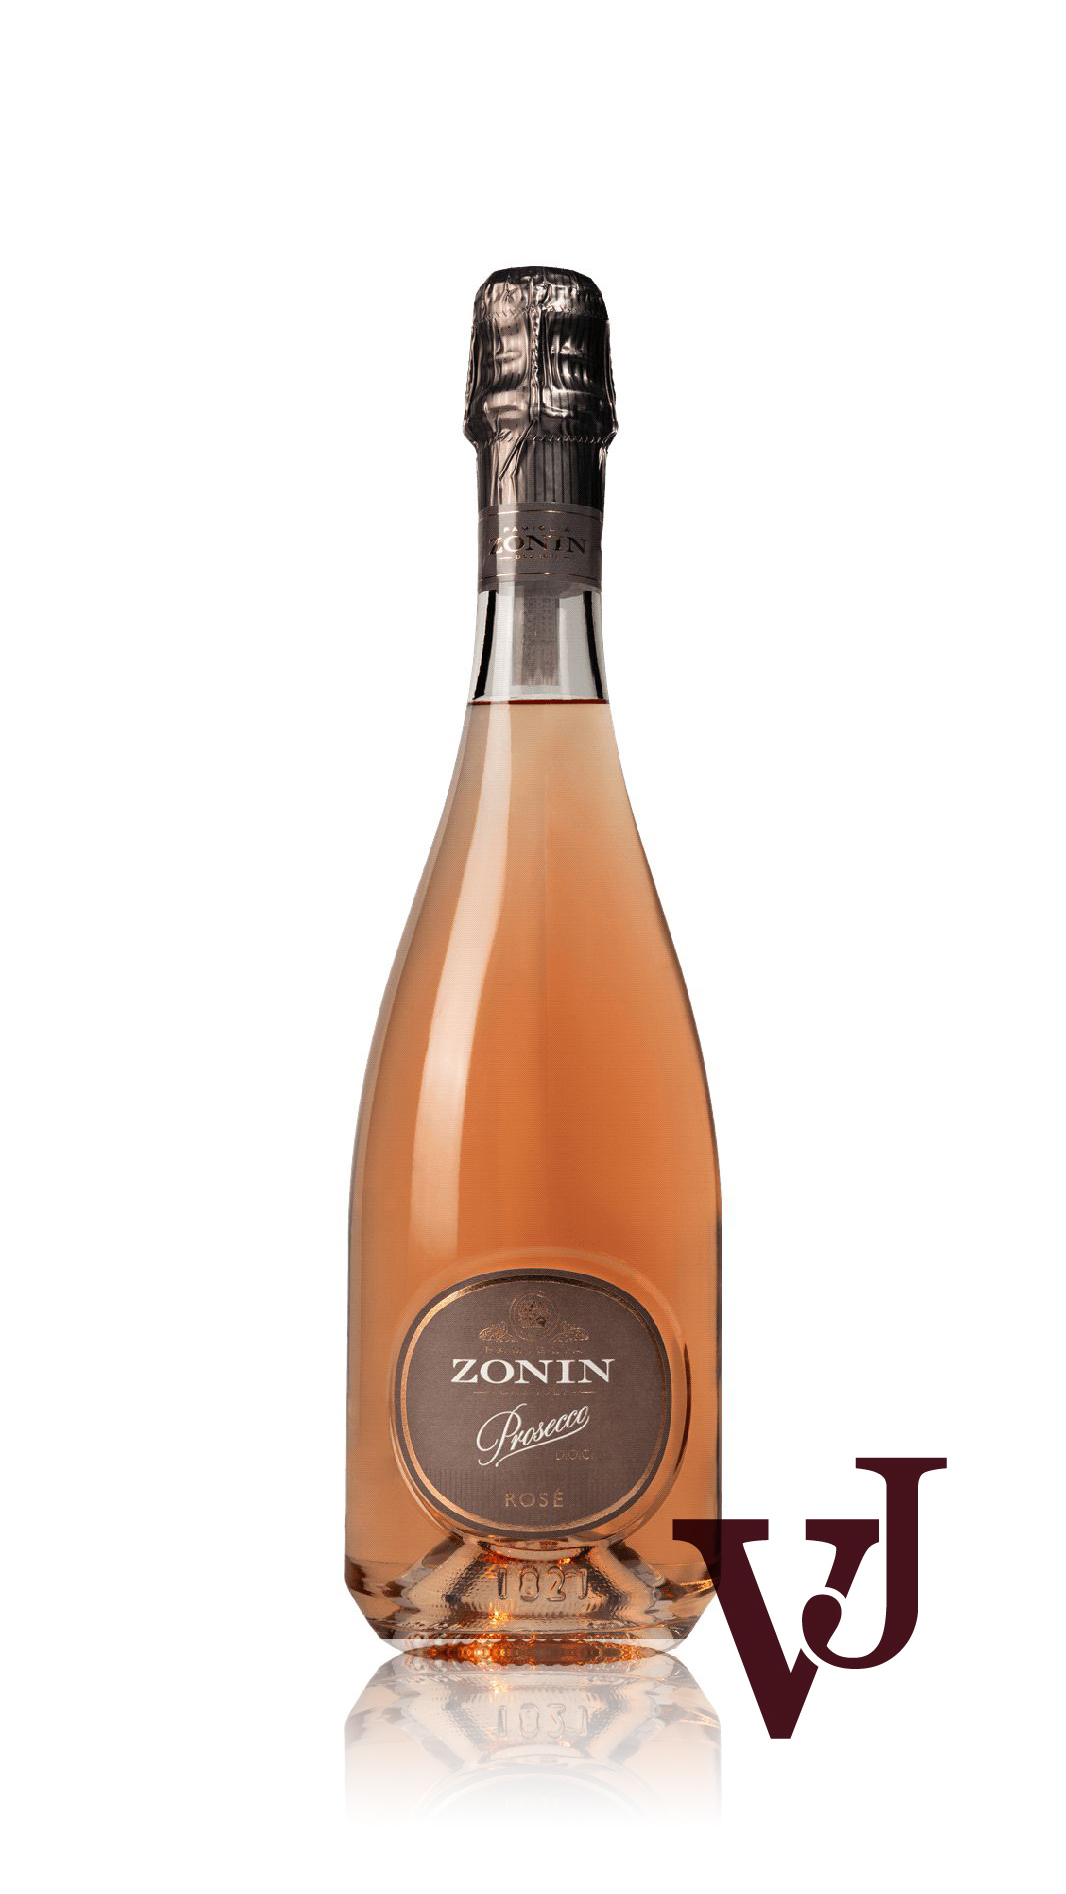 Rosé Vin - Zonin 1821 Prosecco Rosé 2020 artikel nummer 5374301 från producenten Castello d'Albola från området Italien